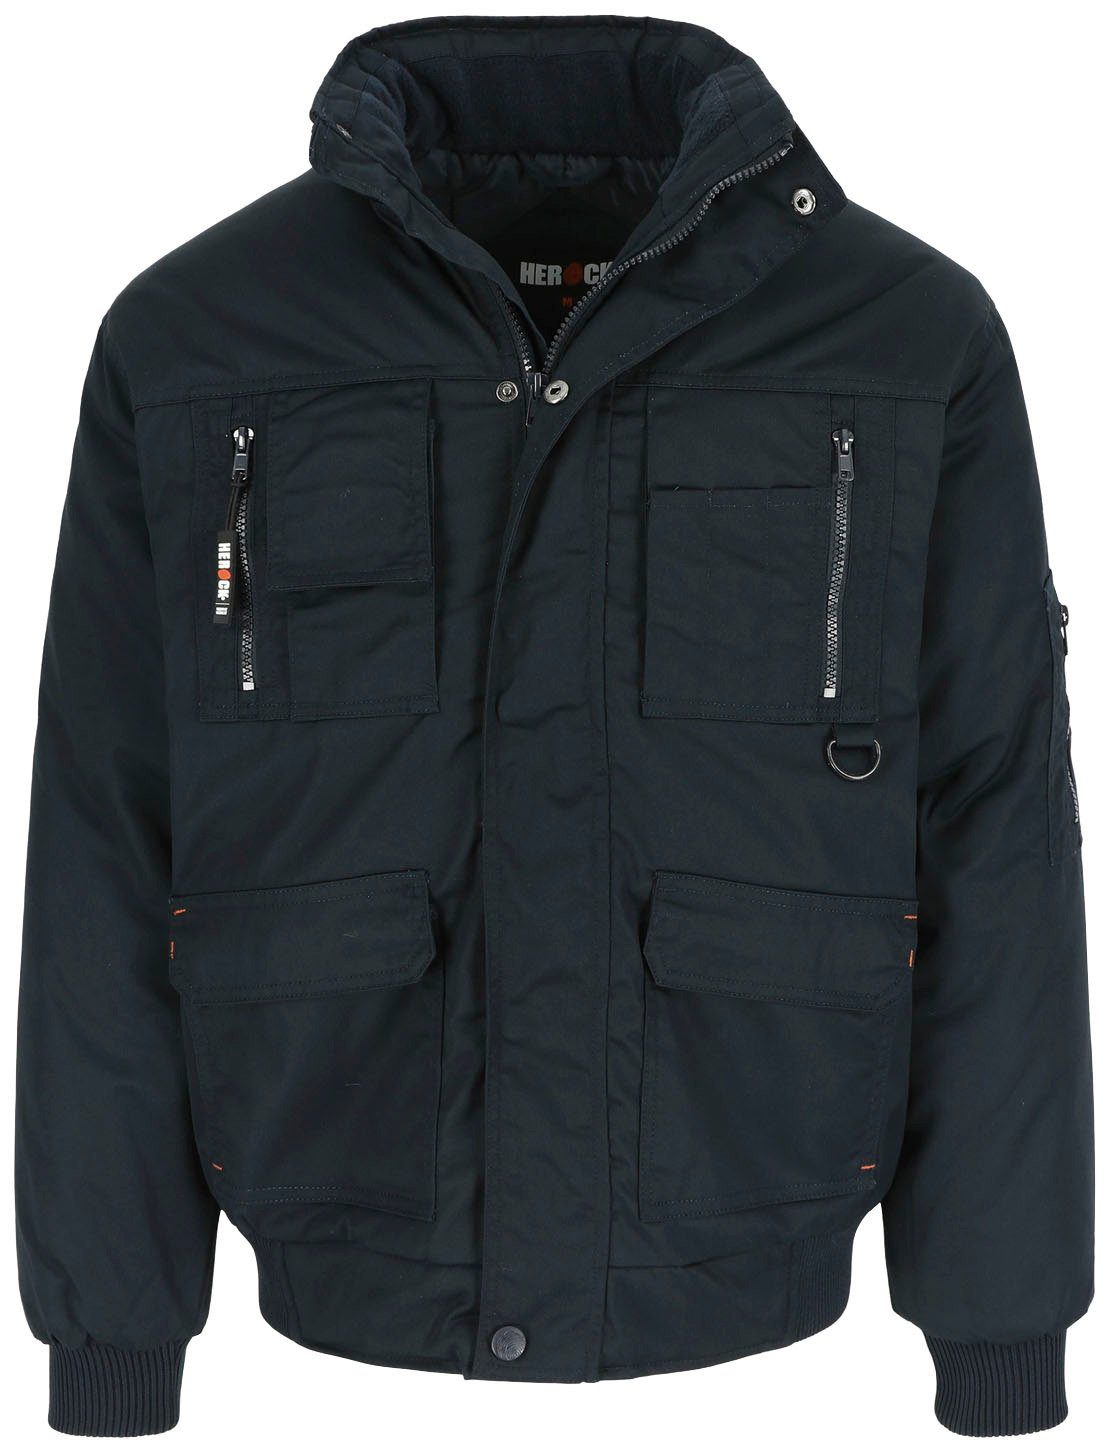 Jacke Herock mit Taschen, Wasserabweisend Typhon Arbeitsjacke viele robust, viele Fleece-Kragen, marine Farben